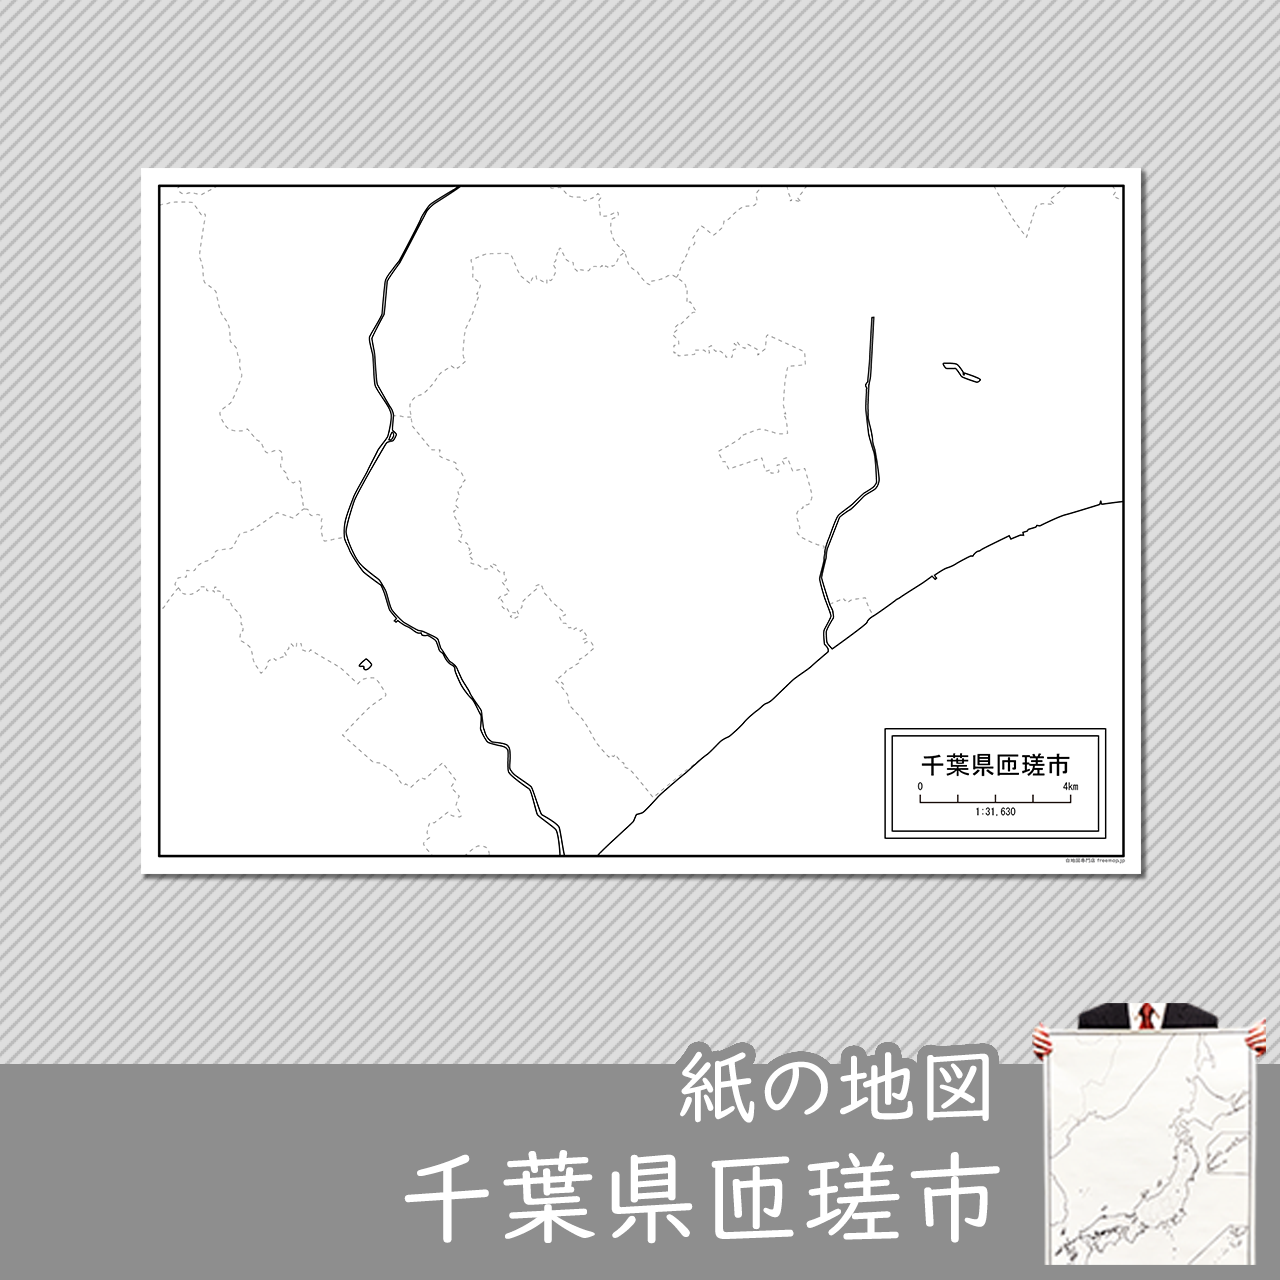 匝瑳市の紙の白地図のサムネイル